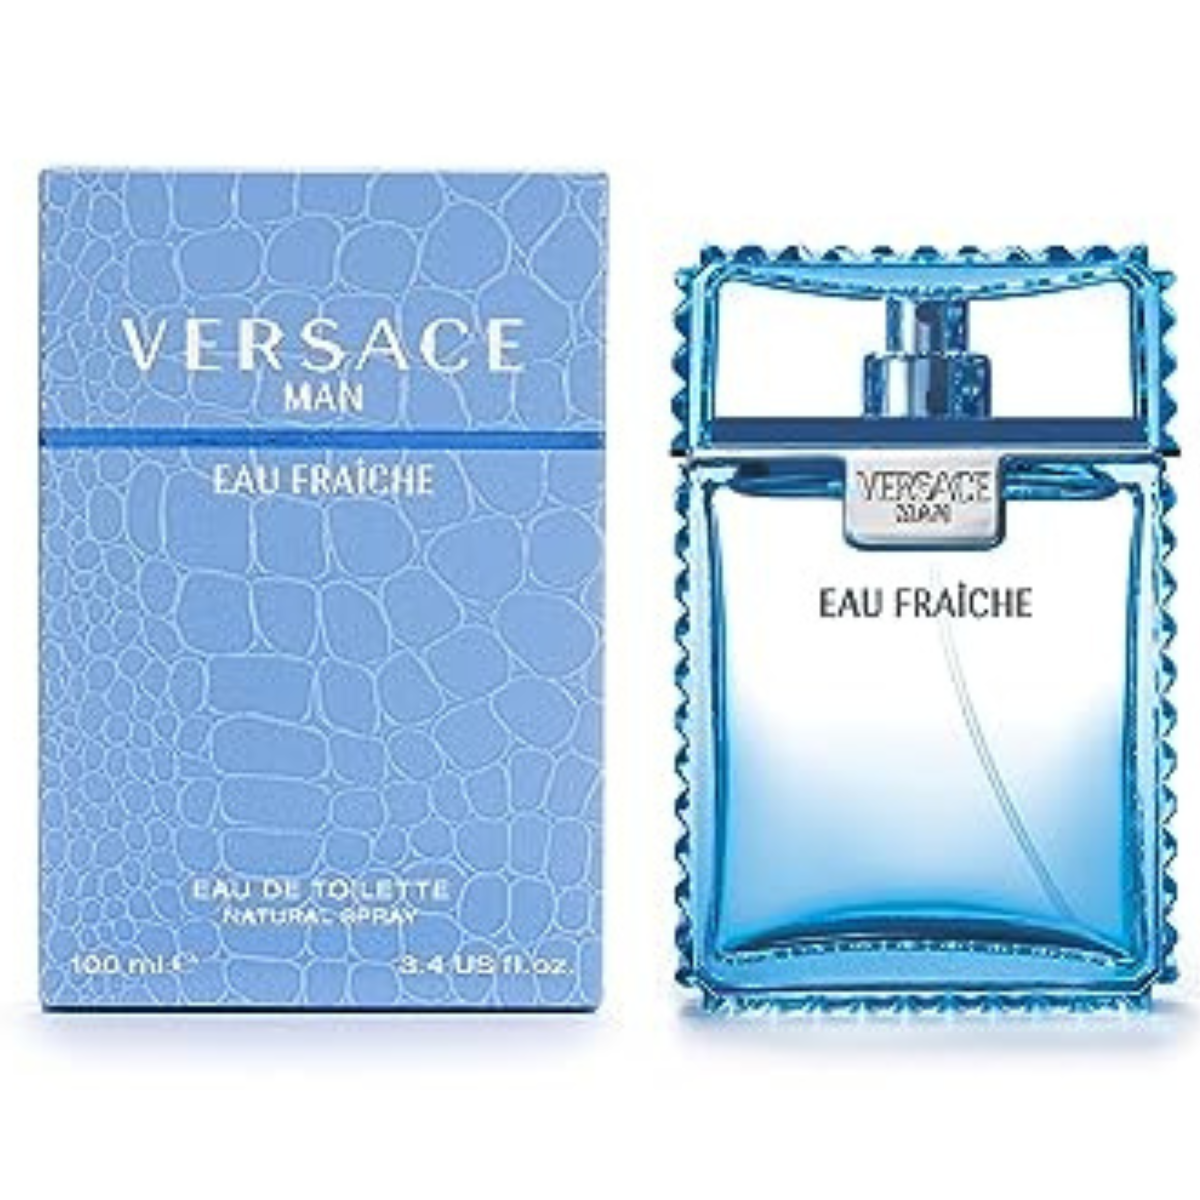 Versace Man Eau Fraiche 100 ml for Men-2